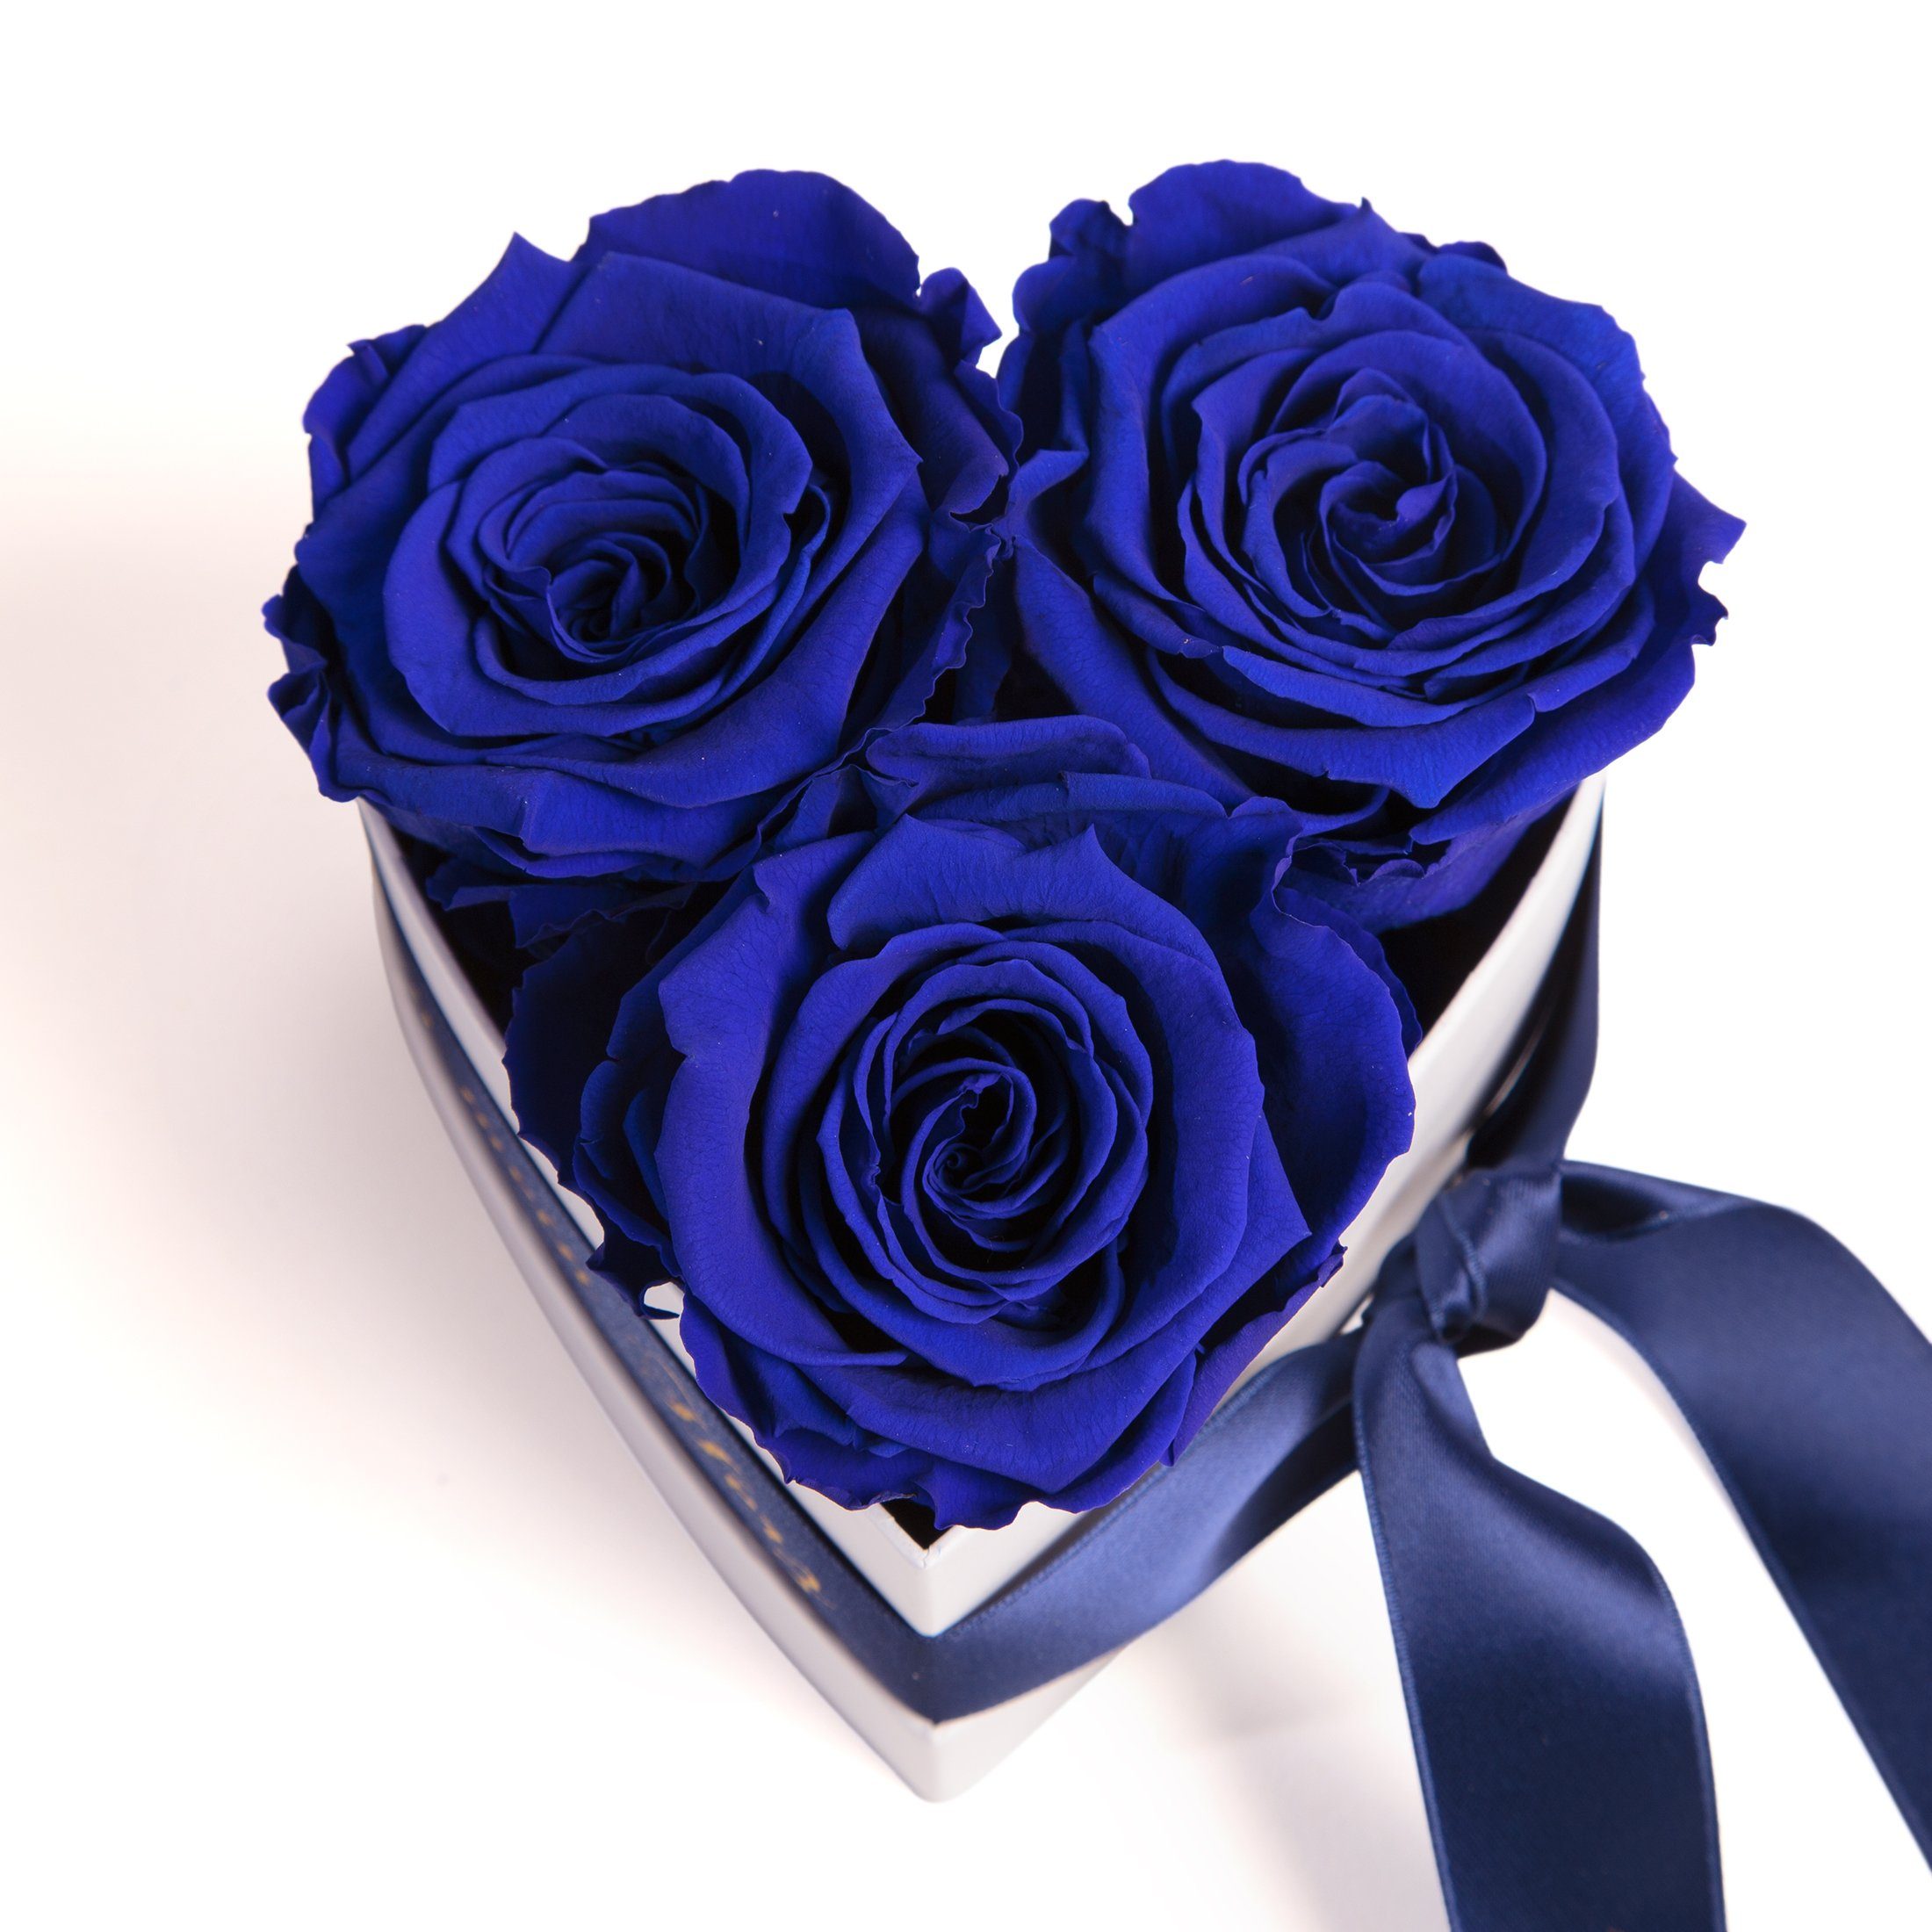 3 haltbar Höhe mein Herz Infinity Blumen Geschenk Geschenkbox Jahre 3 SCHULZ Kunstblume 10 bist blau ROSEMARIE Heidelberg, Rosenbox echte Rose, Rosen Mama Du cm,